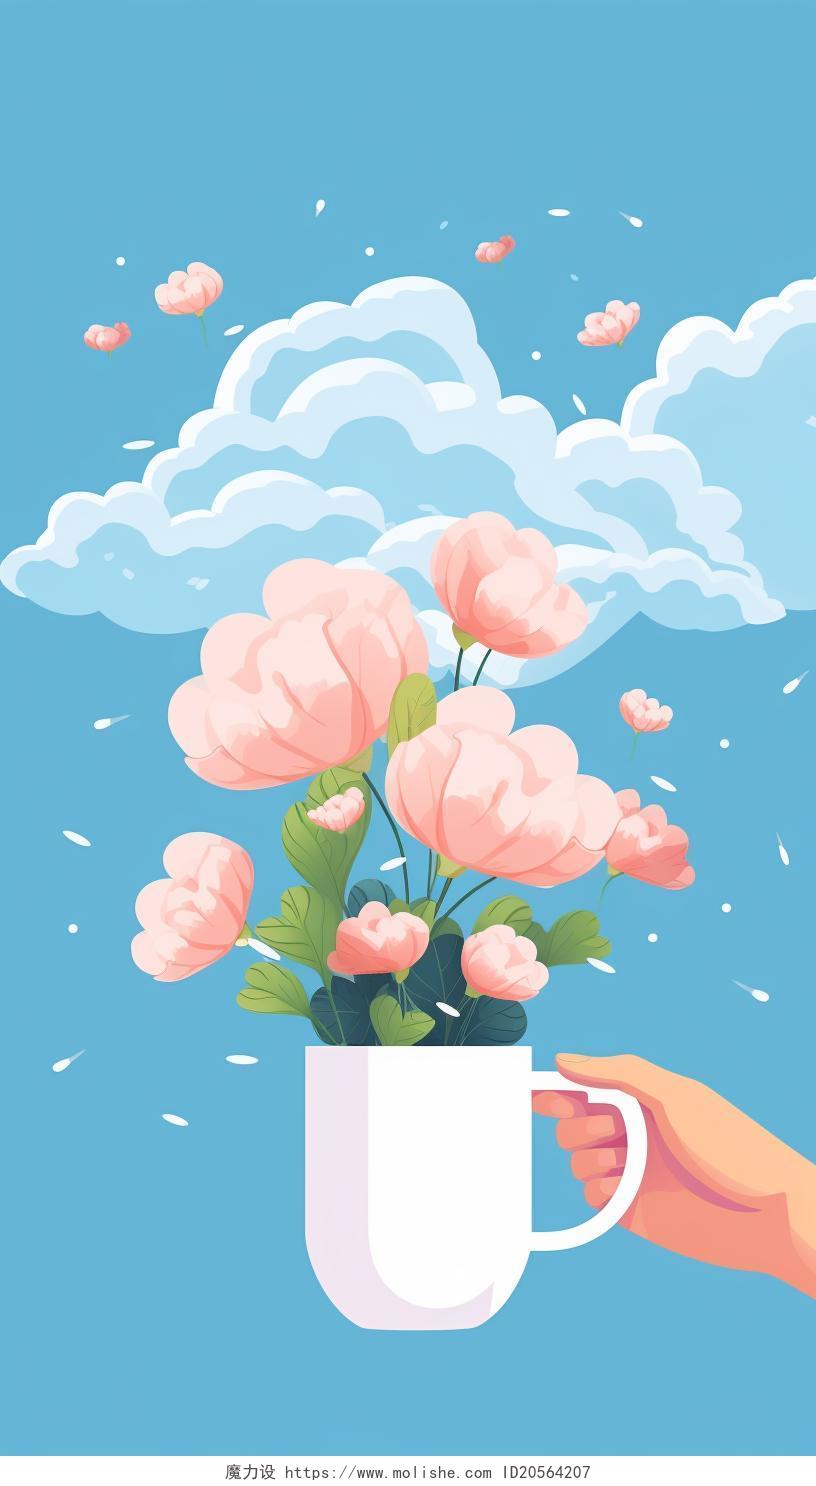 卡通唯美手绘平面一只手拿着杯子和花朵上方有云朵简约场景插画壁纸海报